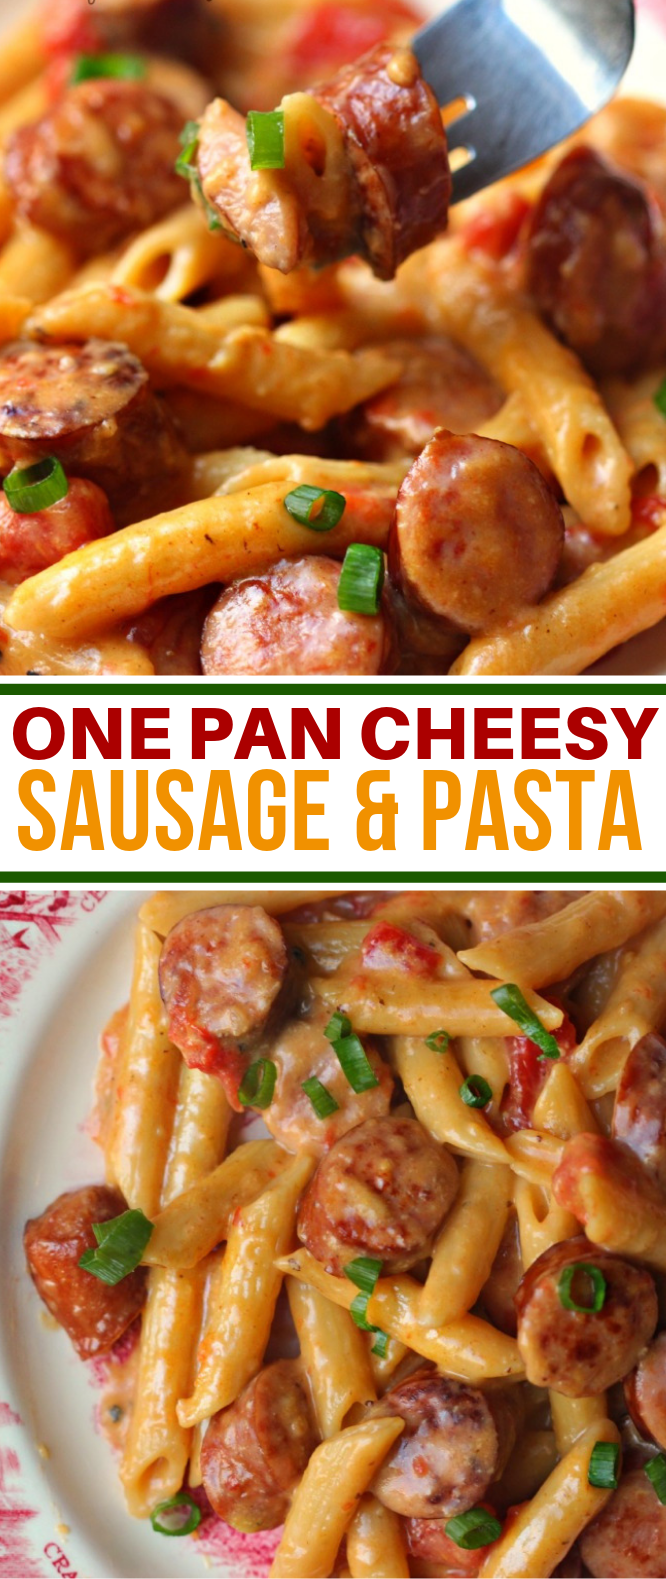 ONE PAN CHEESY SMOKED SAUSAGE & PASTA RECIPE #dinner #pastarecipe